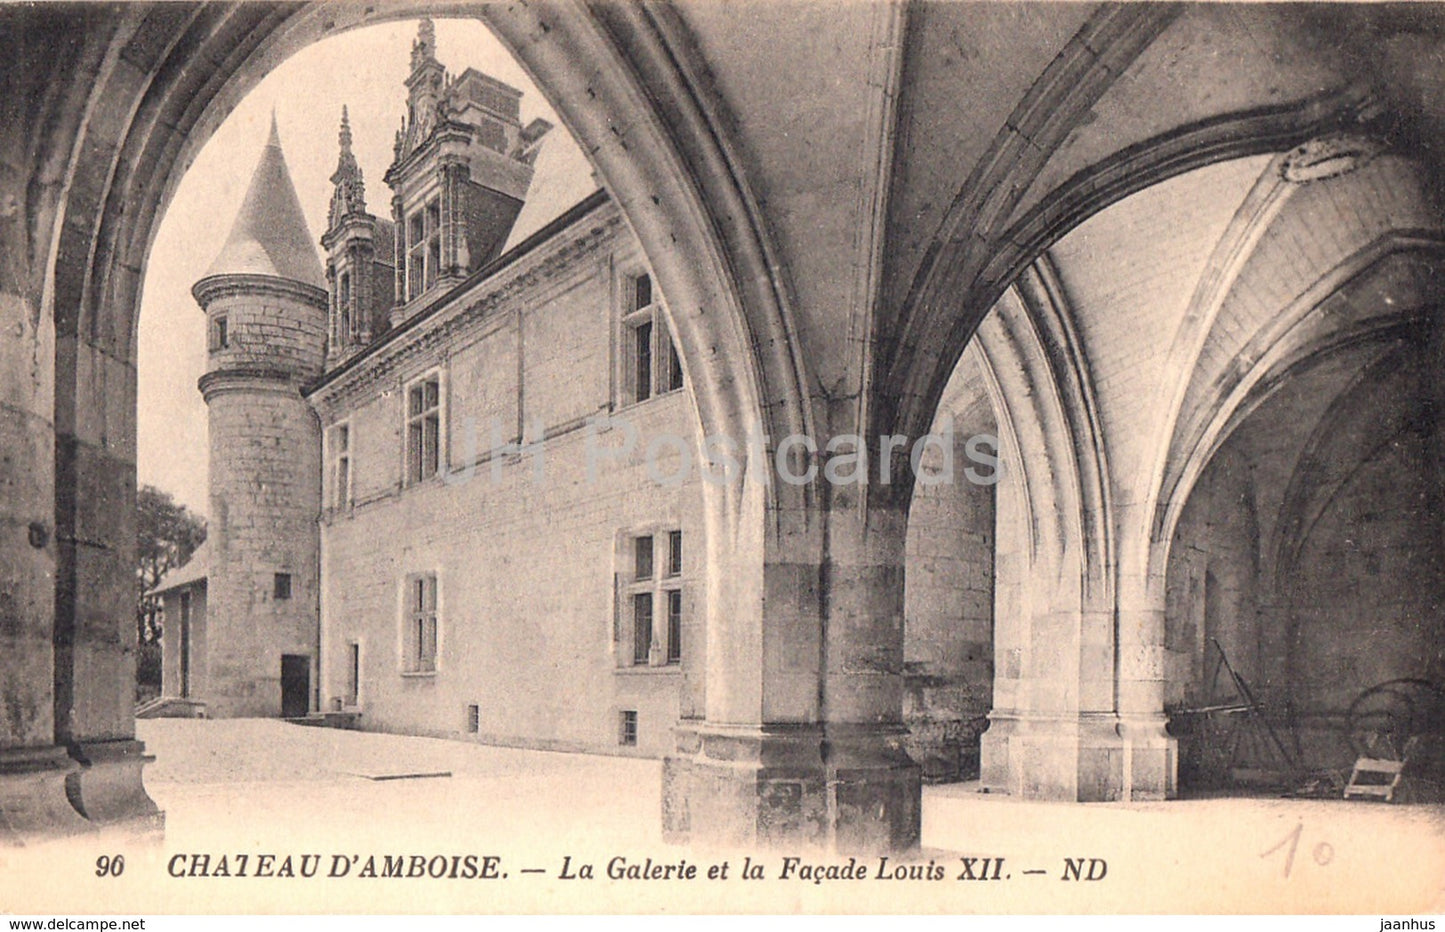 Chateau d' Amboise - La Galerie et la Facade Louis XII - castle - 90 - old postcard - France - unused